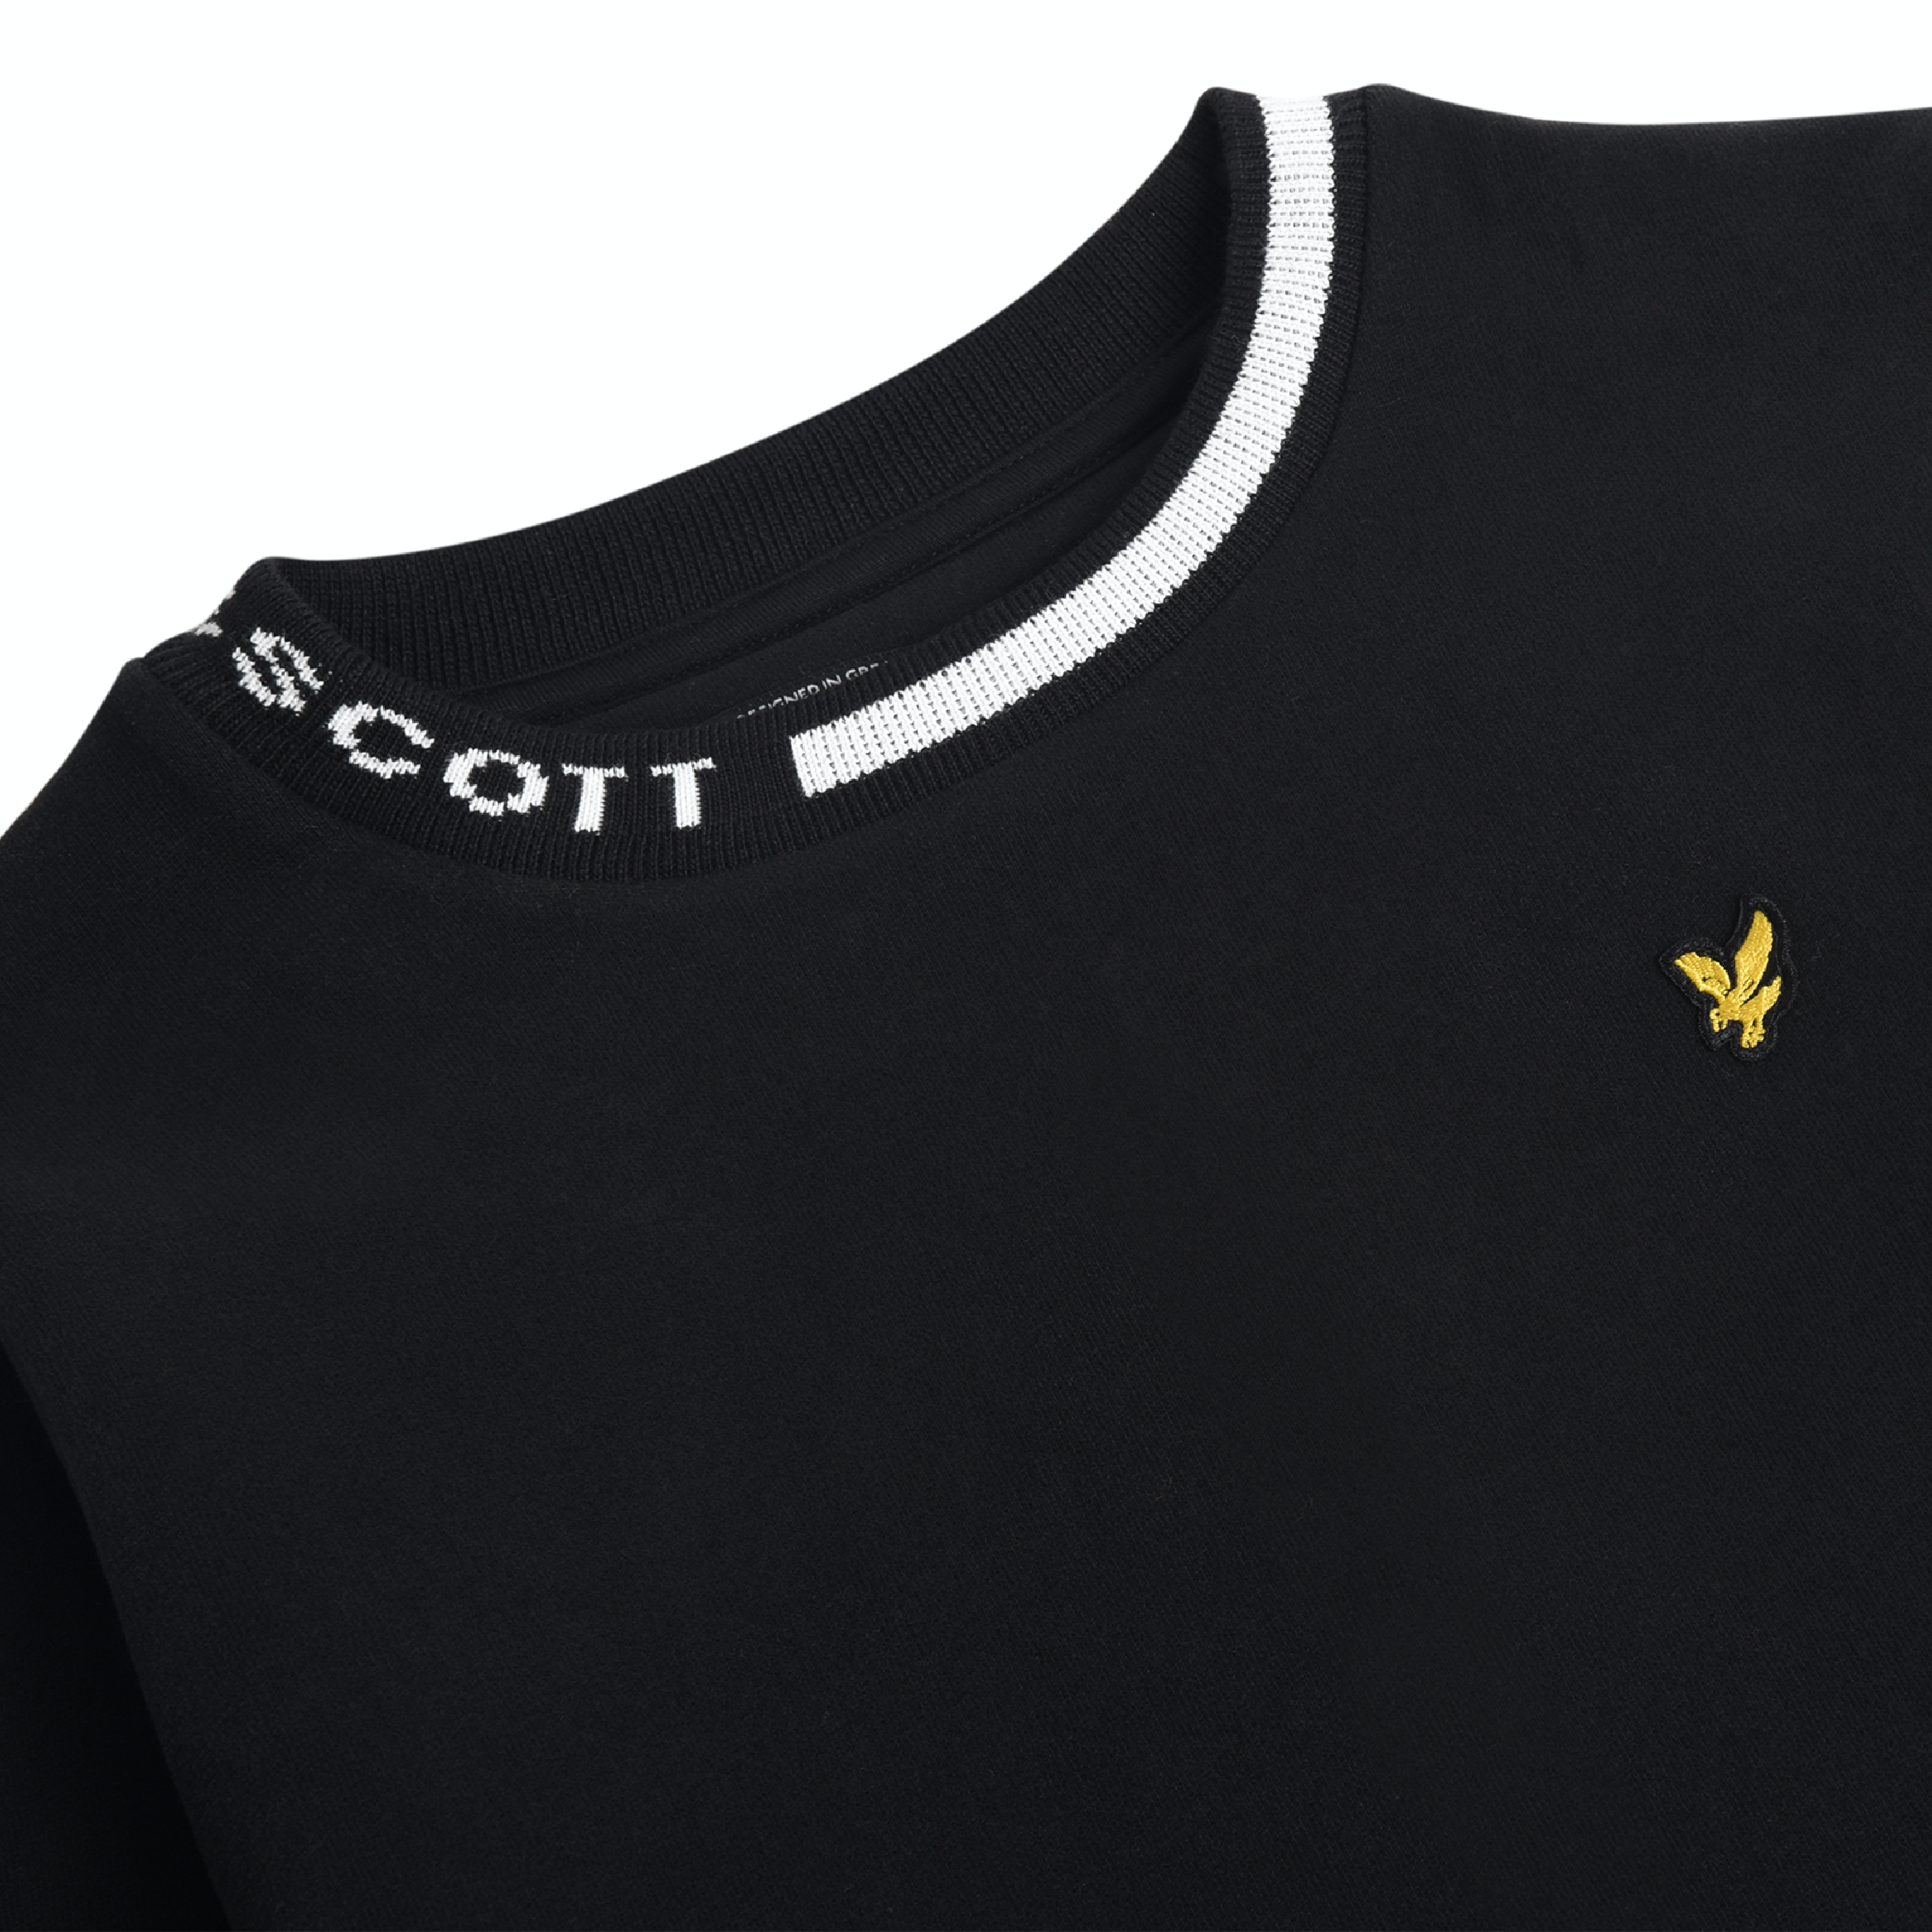 Jongens Branded Ringer BB Sweatshirt Black van Lyle & Scott in de kleur Black in maat 170-176.